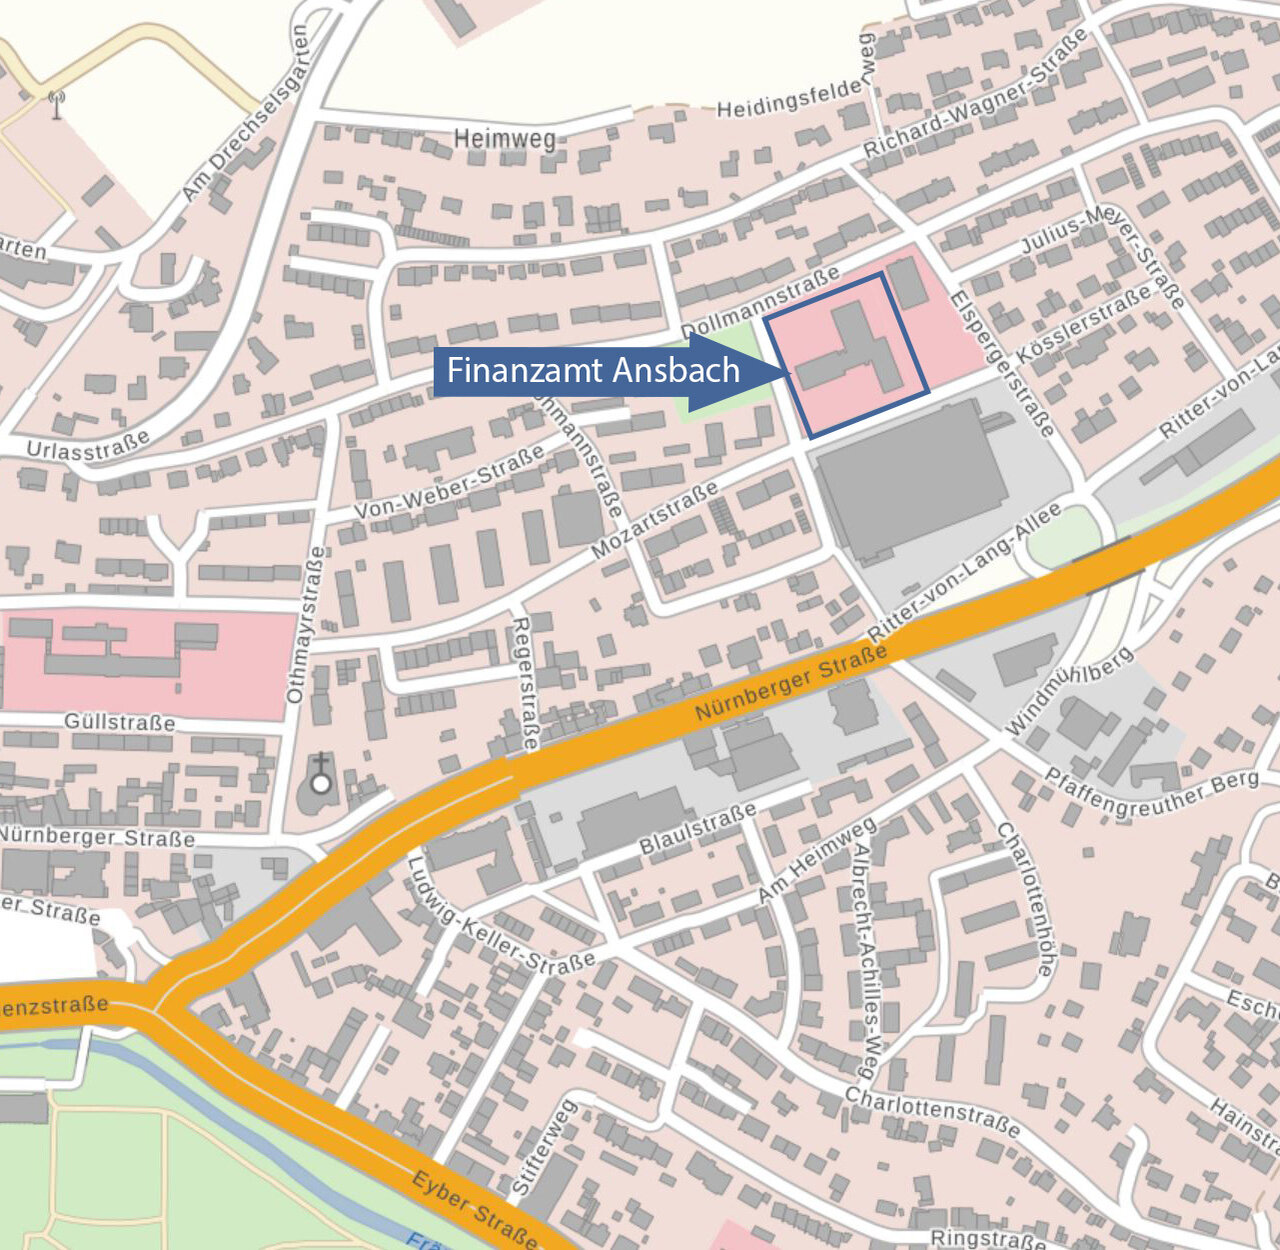  Lageplan Mozartstraße mit Markierung des Finanzamts Ansbach